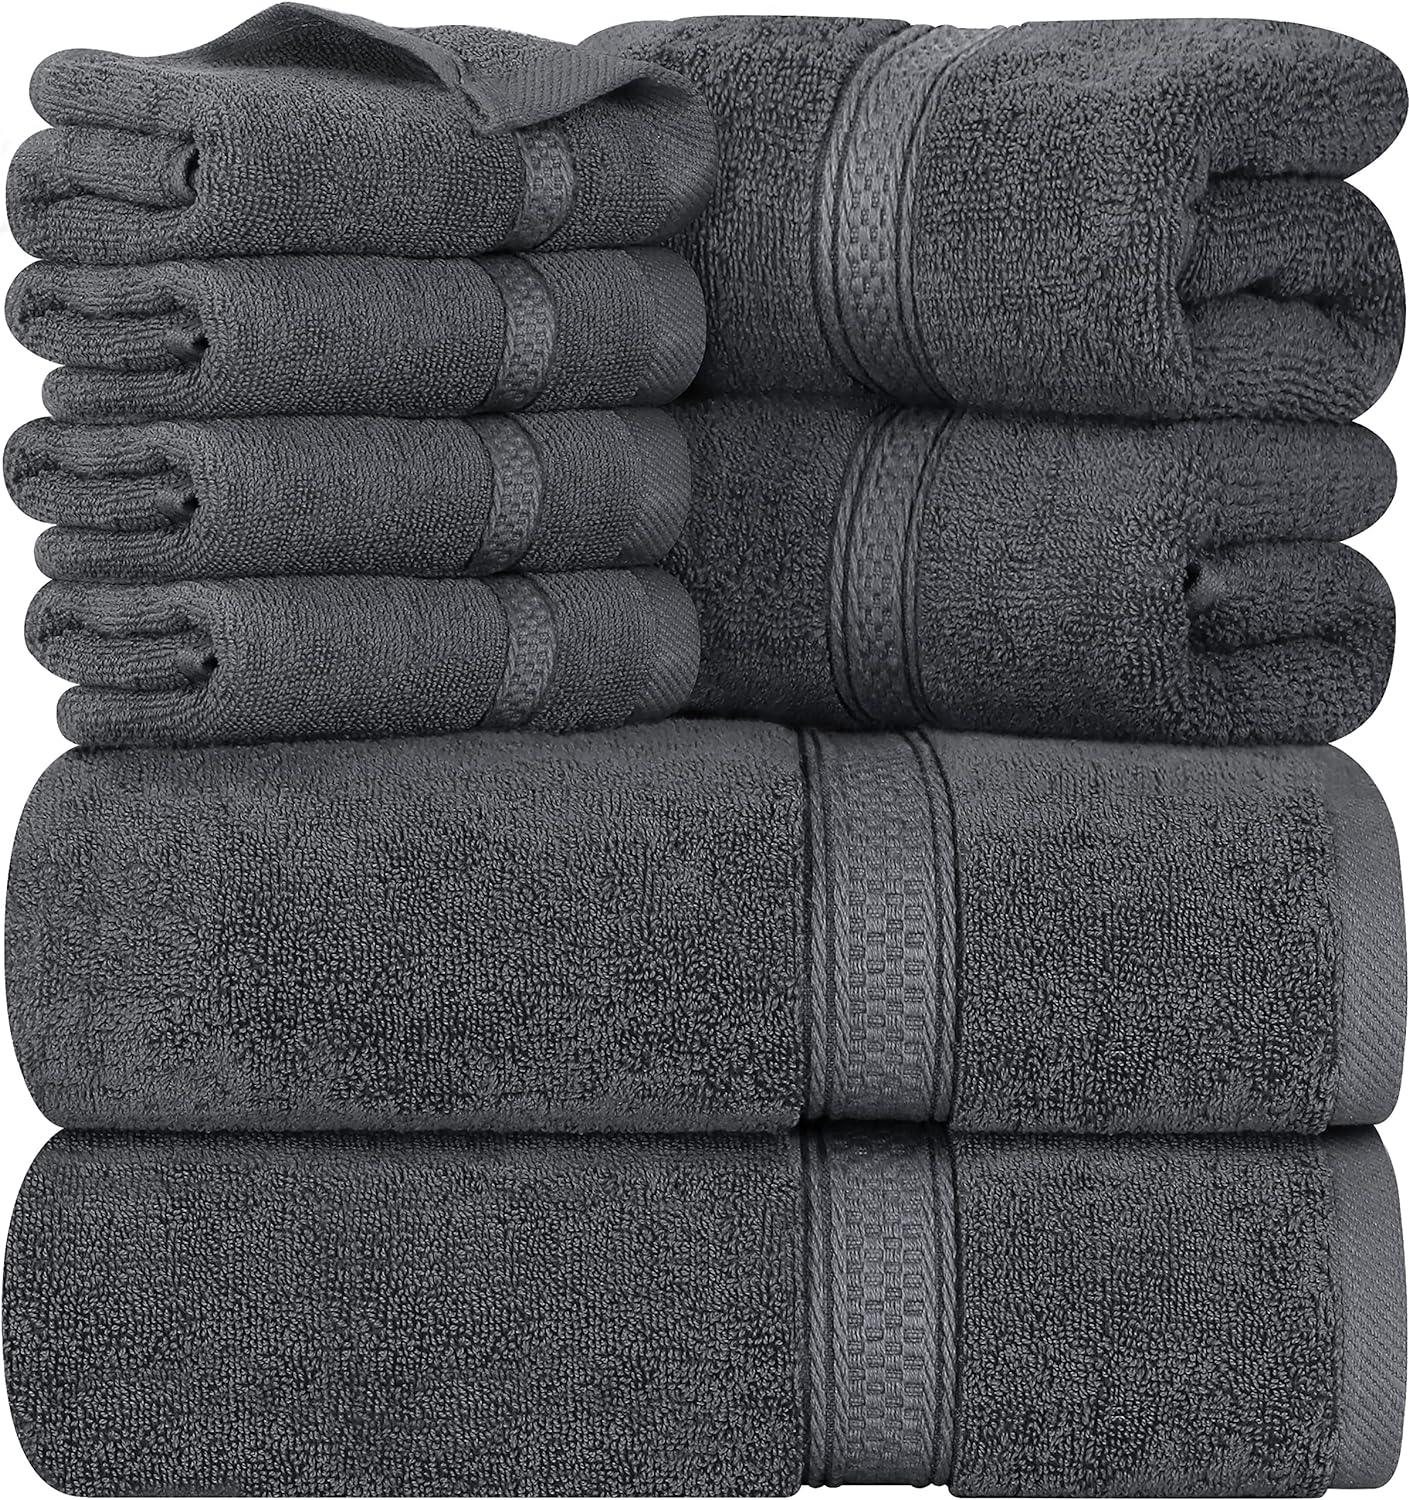 Juego de 8 toallas de baño negras de gran tamaño, 2 toallas de baño  extragrandes, 2 toallas de mano, 4 toallas pequeñas, 600GSM, suaves,  altamente